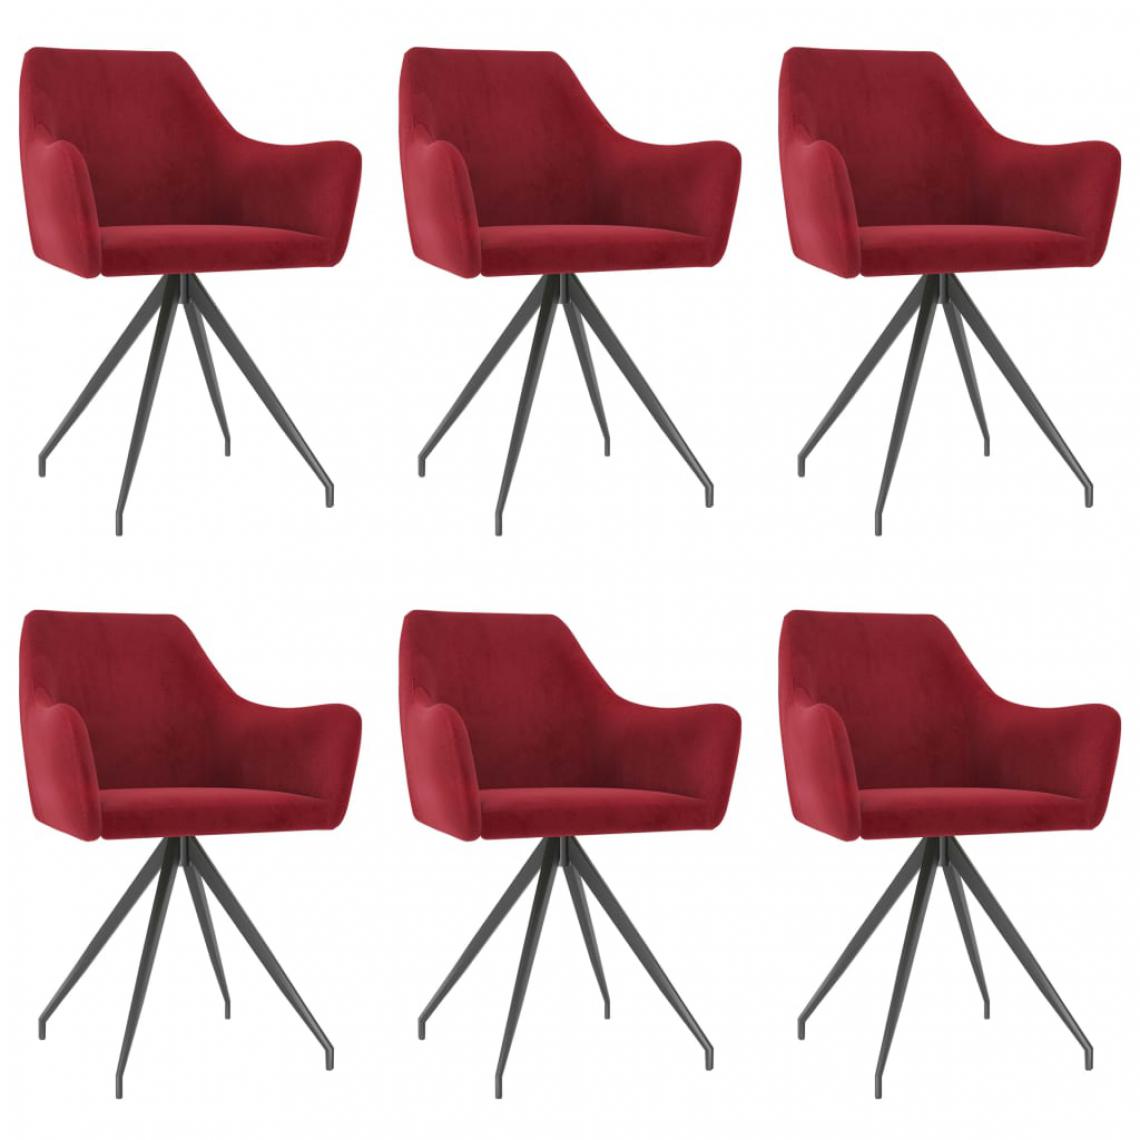 Chunhelife - Chunhelife Chaises de salle à manger 6 pcs Rouge bordeaux Velours - Chaises